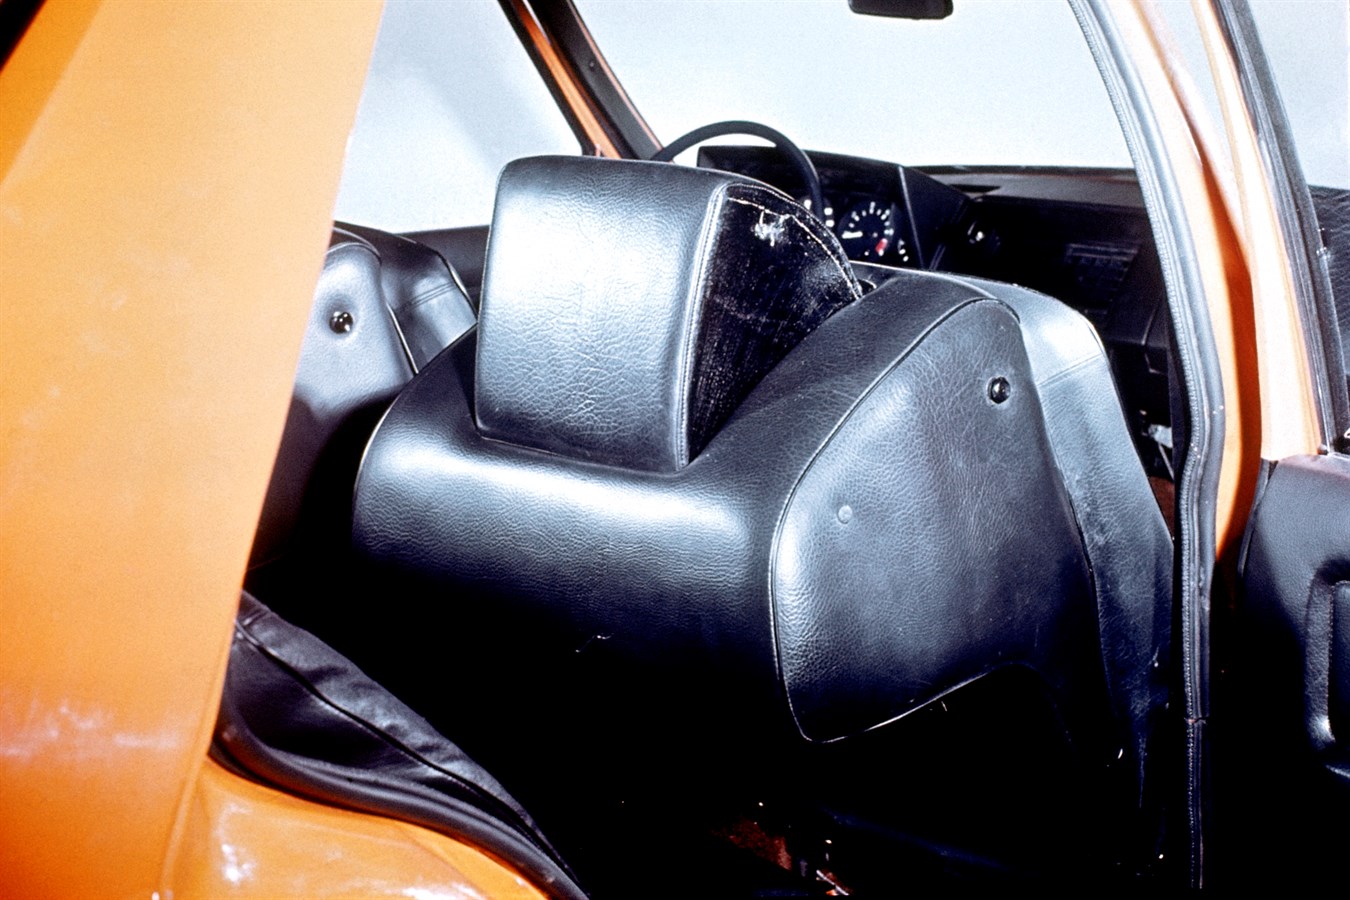 Vettura di sicurezza sperimentale Volvo (VESC, Volvo Experimental Safety Car), 1972; vennero realizzate varie vetture VESC, per collaudare una serie di nuove funzioni di sicurezza e verificare la reazione del pubblico agli aspetti della linea della Volvo 240, lanciata due anni più tardi. Il modello VESC disponeva di zone a deformazione controllata e di una protezione contro il ribaltamento.